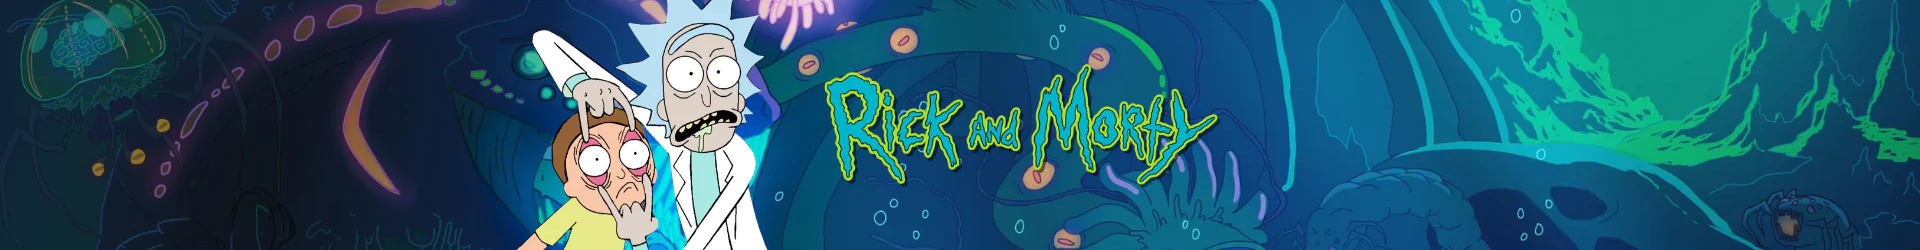 Rick és Morty kulcstartók banner